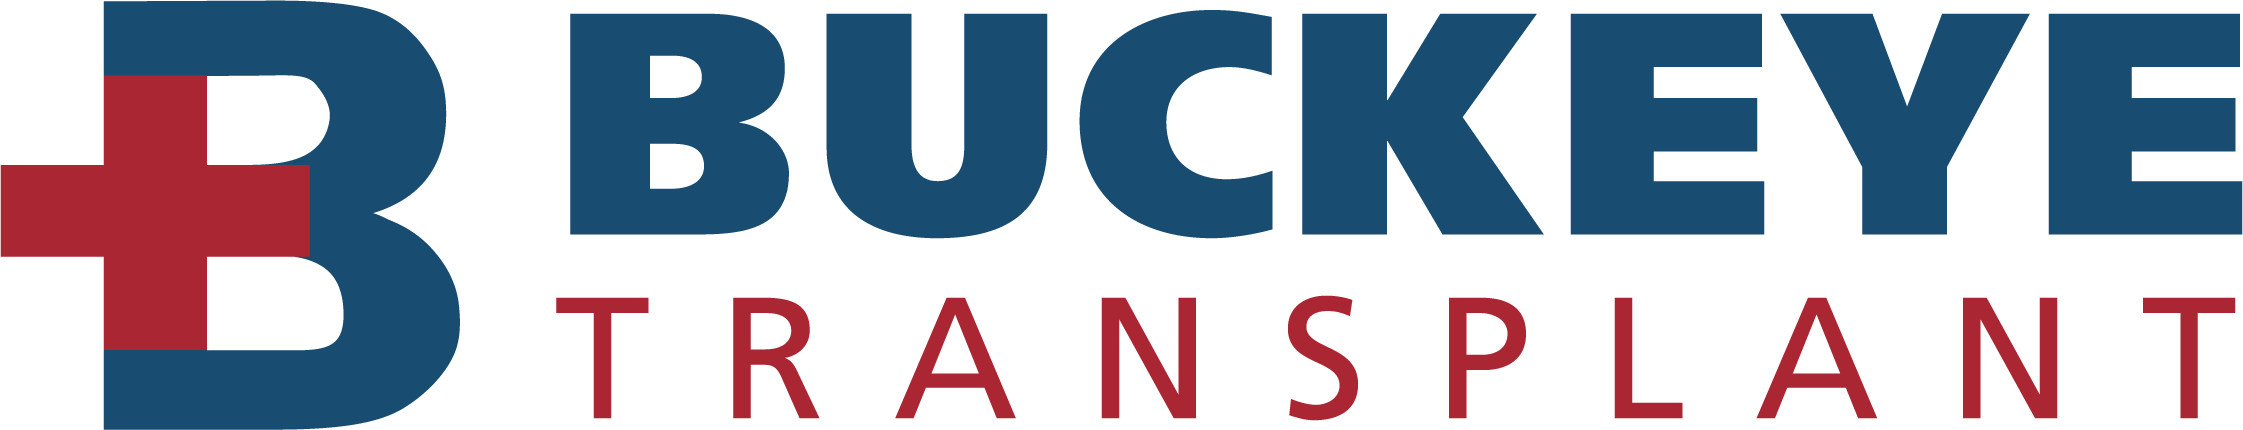 Buckeye Transplant Services